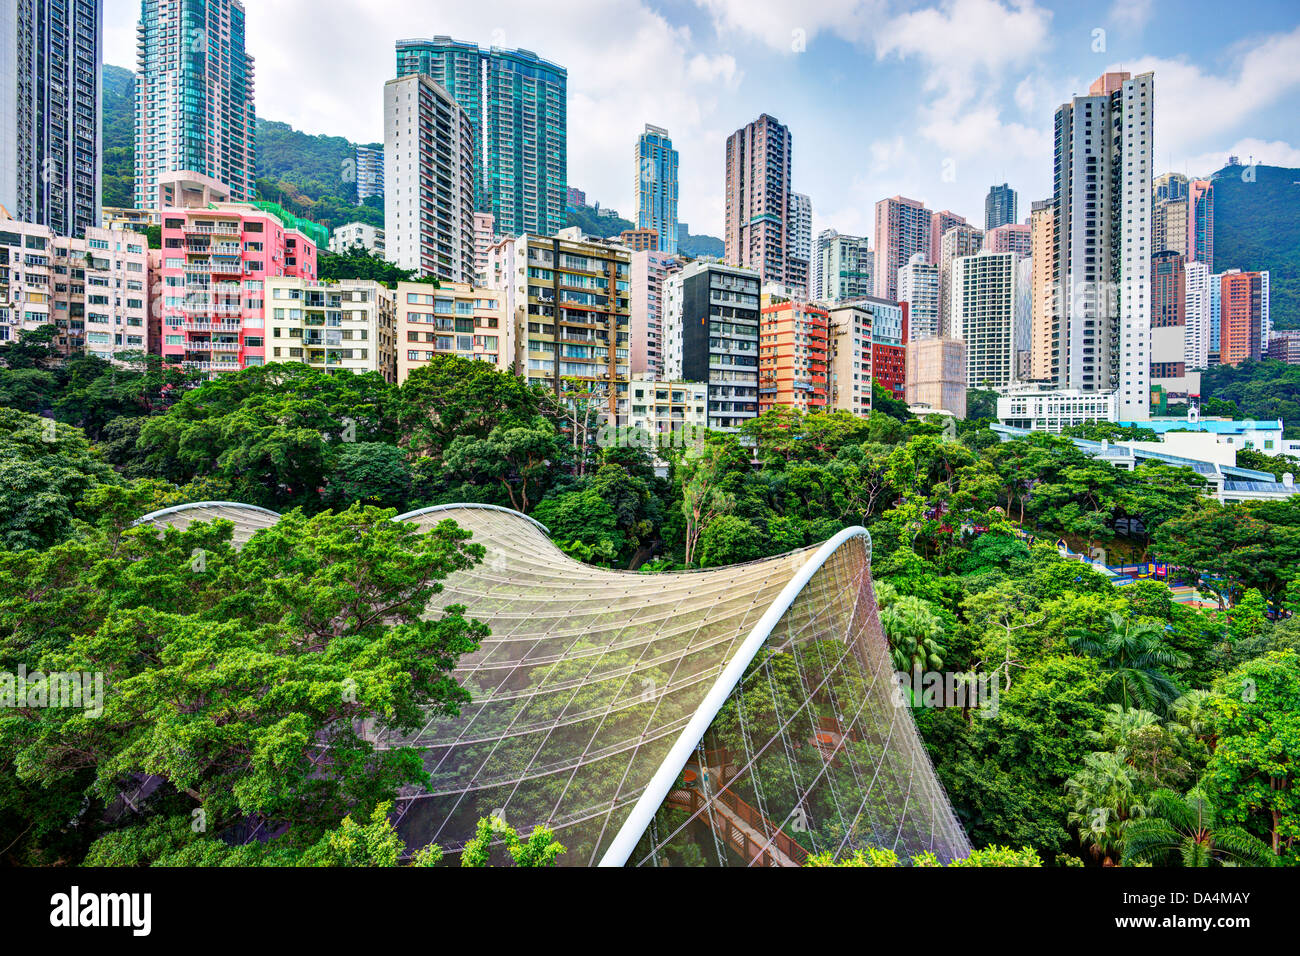 High rise apartments above Hong Kong Park and aviary in Hong Kong, China. Stock Photo